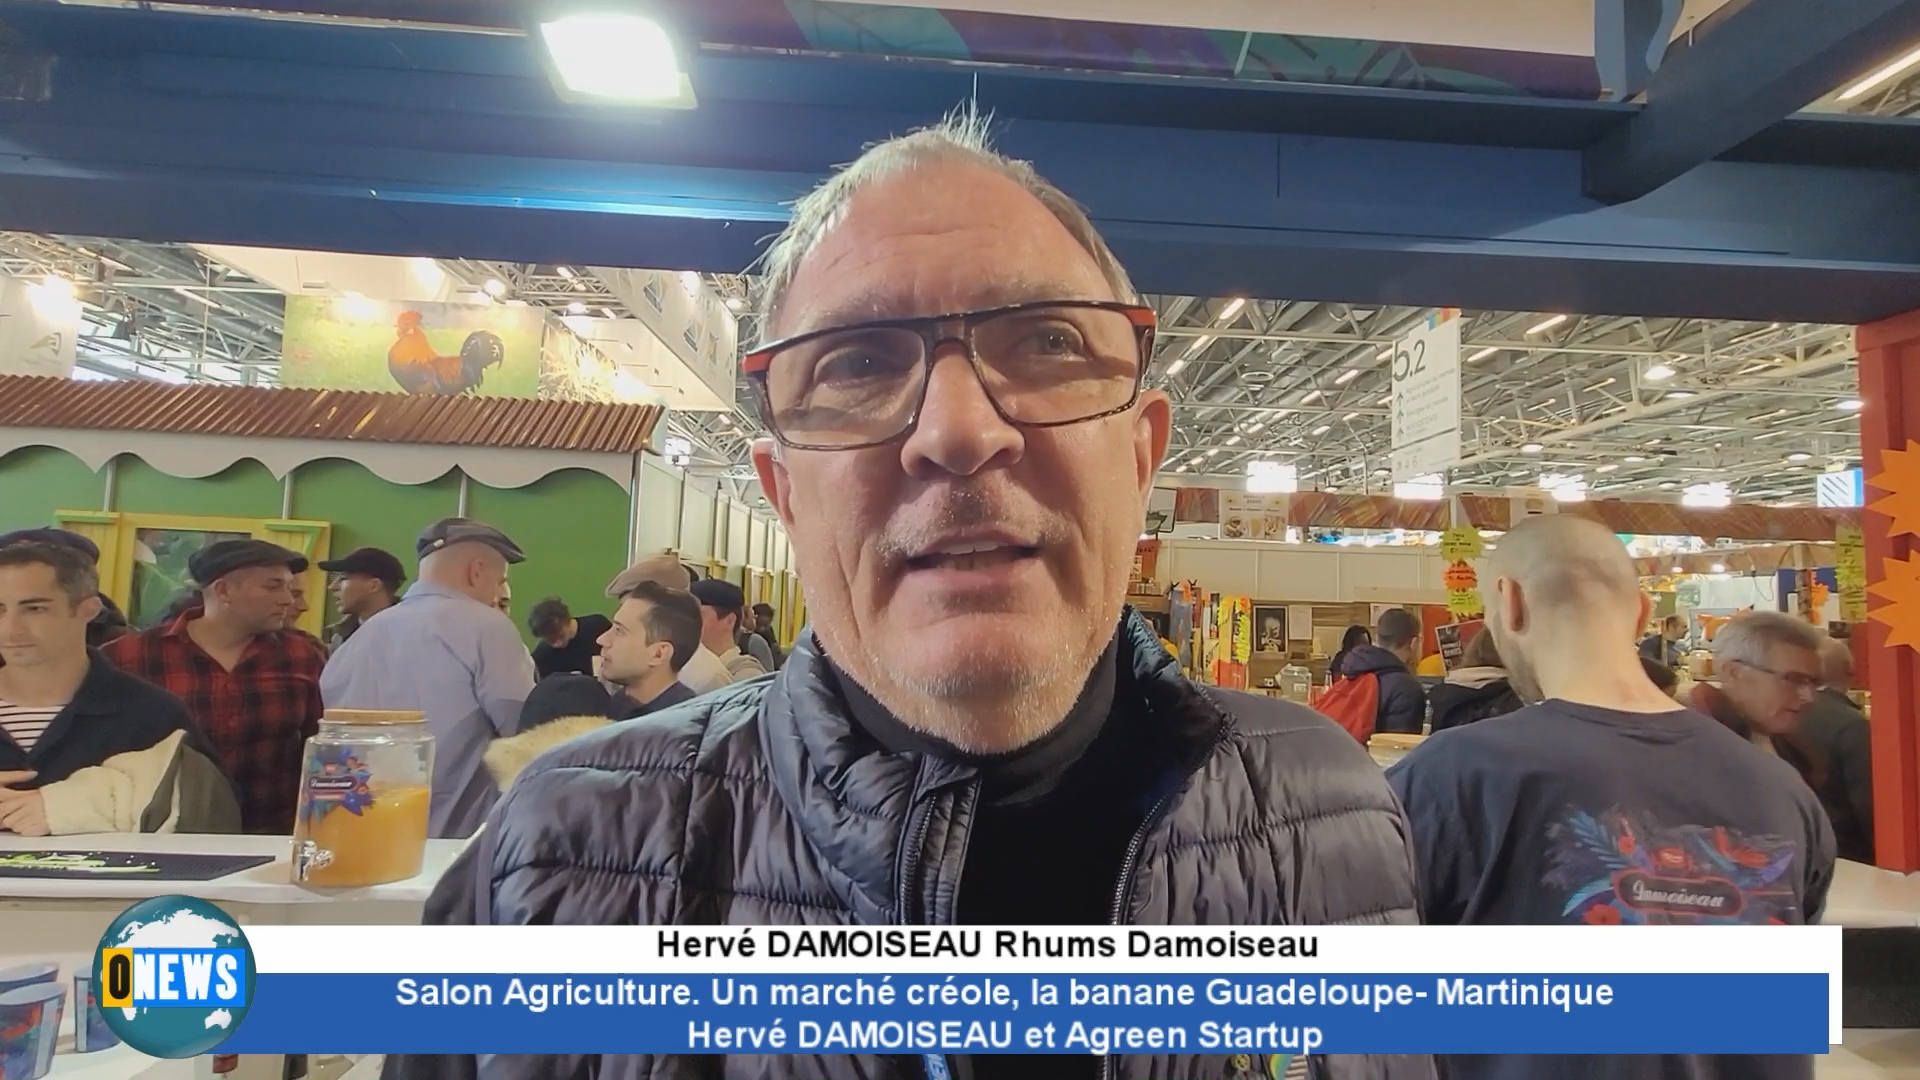 [Vidéo] Salon Agriculture. Un marché créole, la banane Guadeloupe-Martinique Hervé DAMOISEAU et Agreen Startup